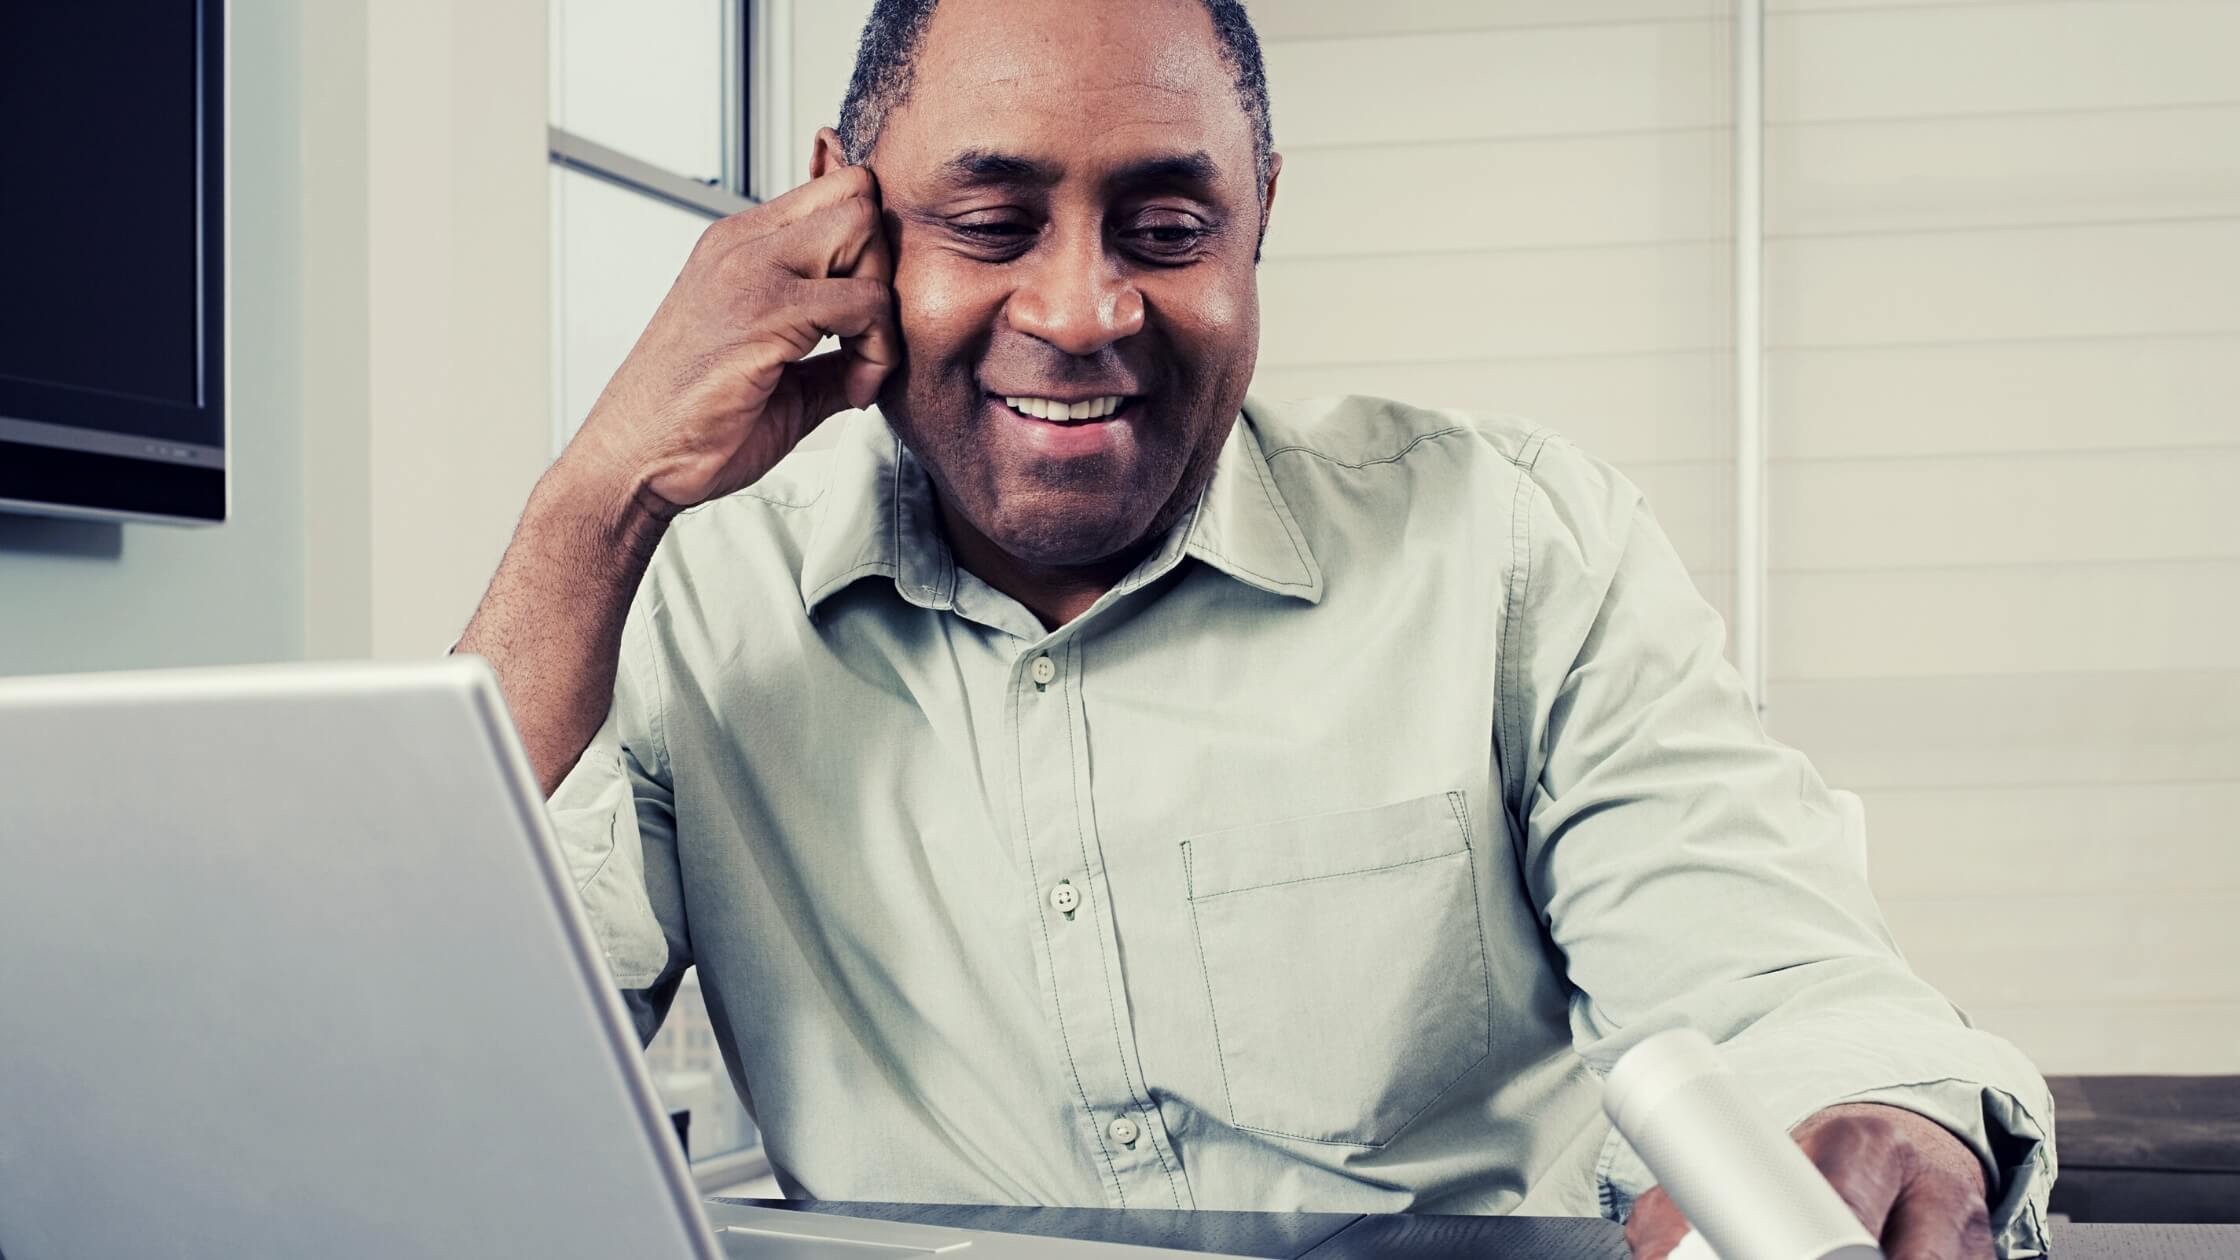 Hombre adulto, piel morena, sonriendo y trabajando con su laptop